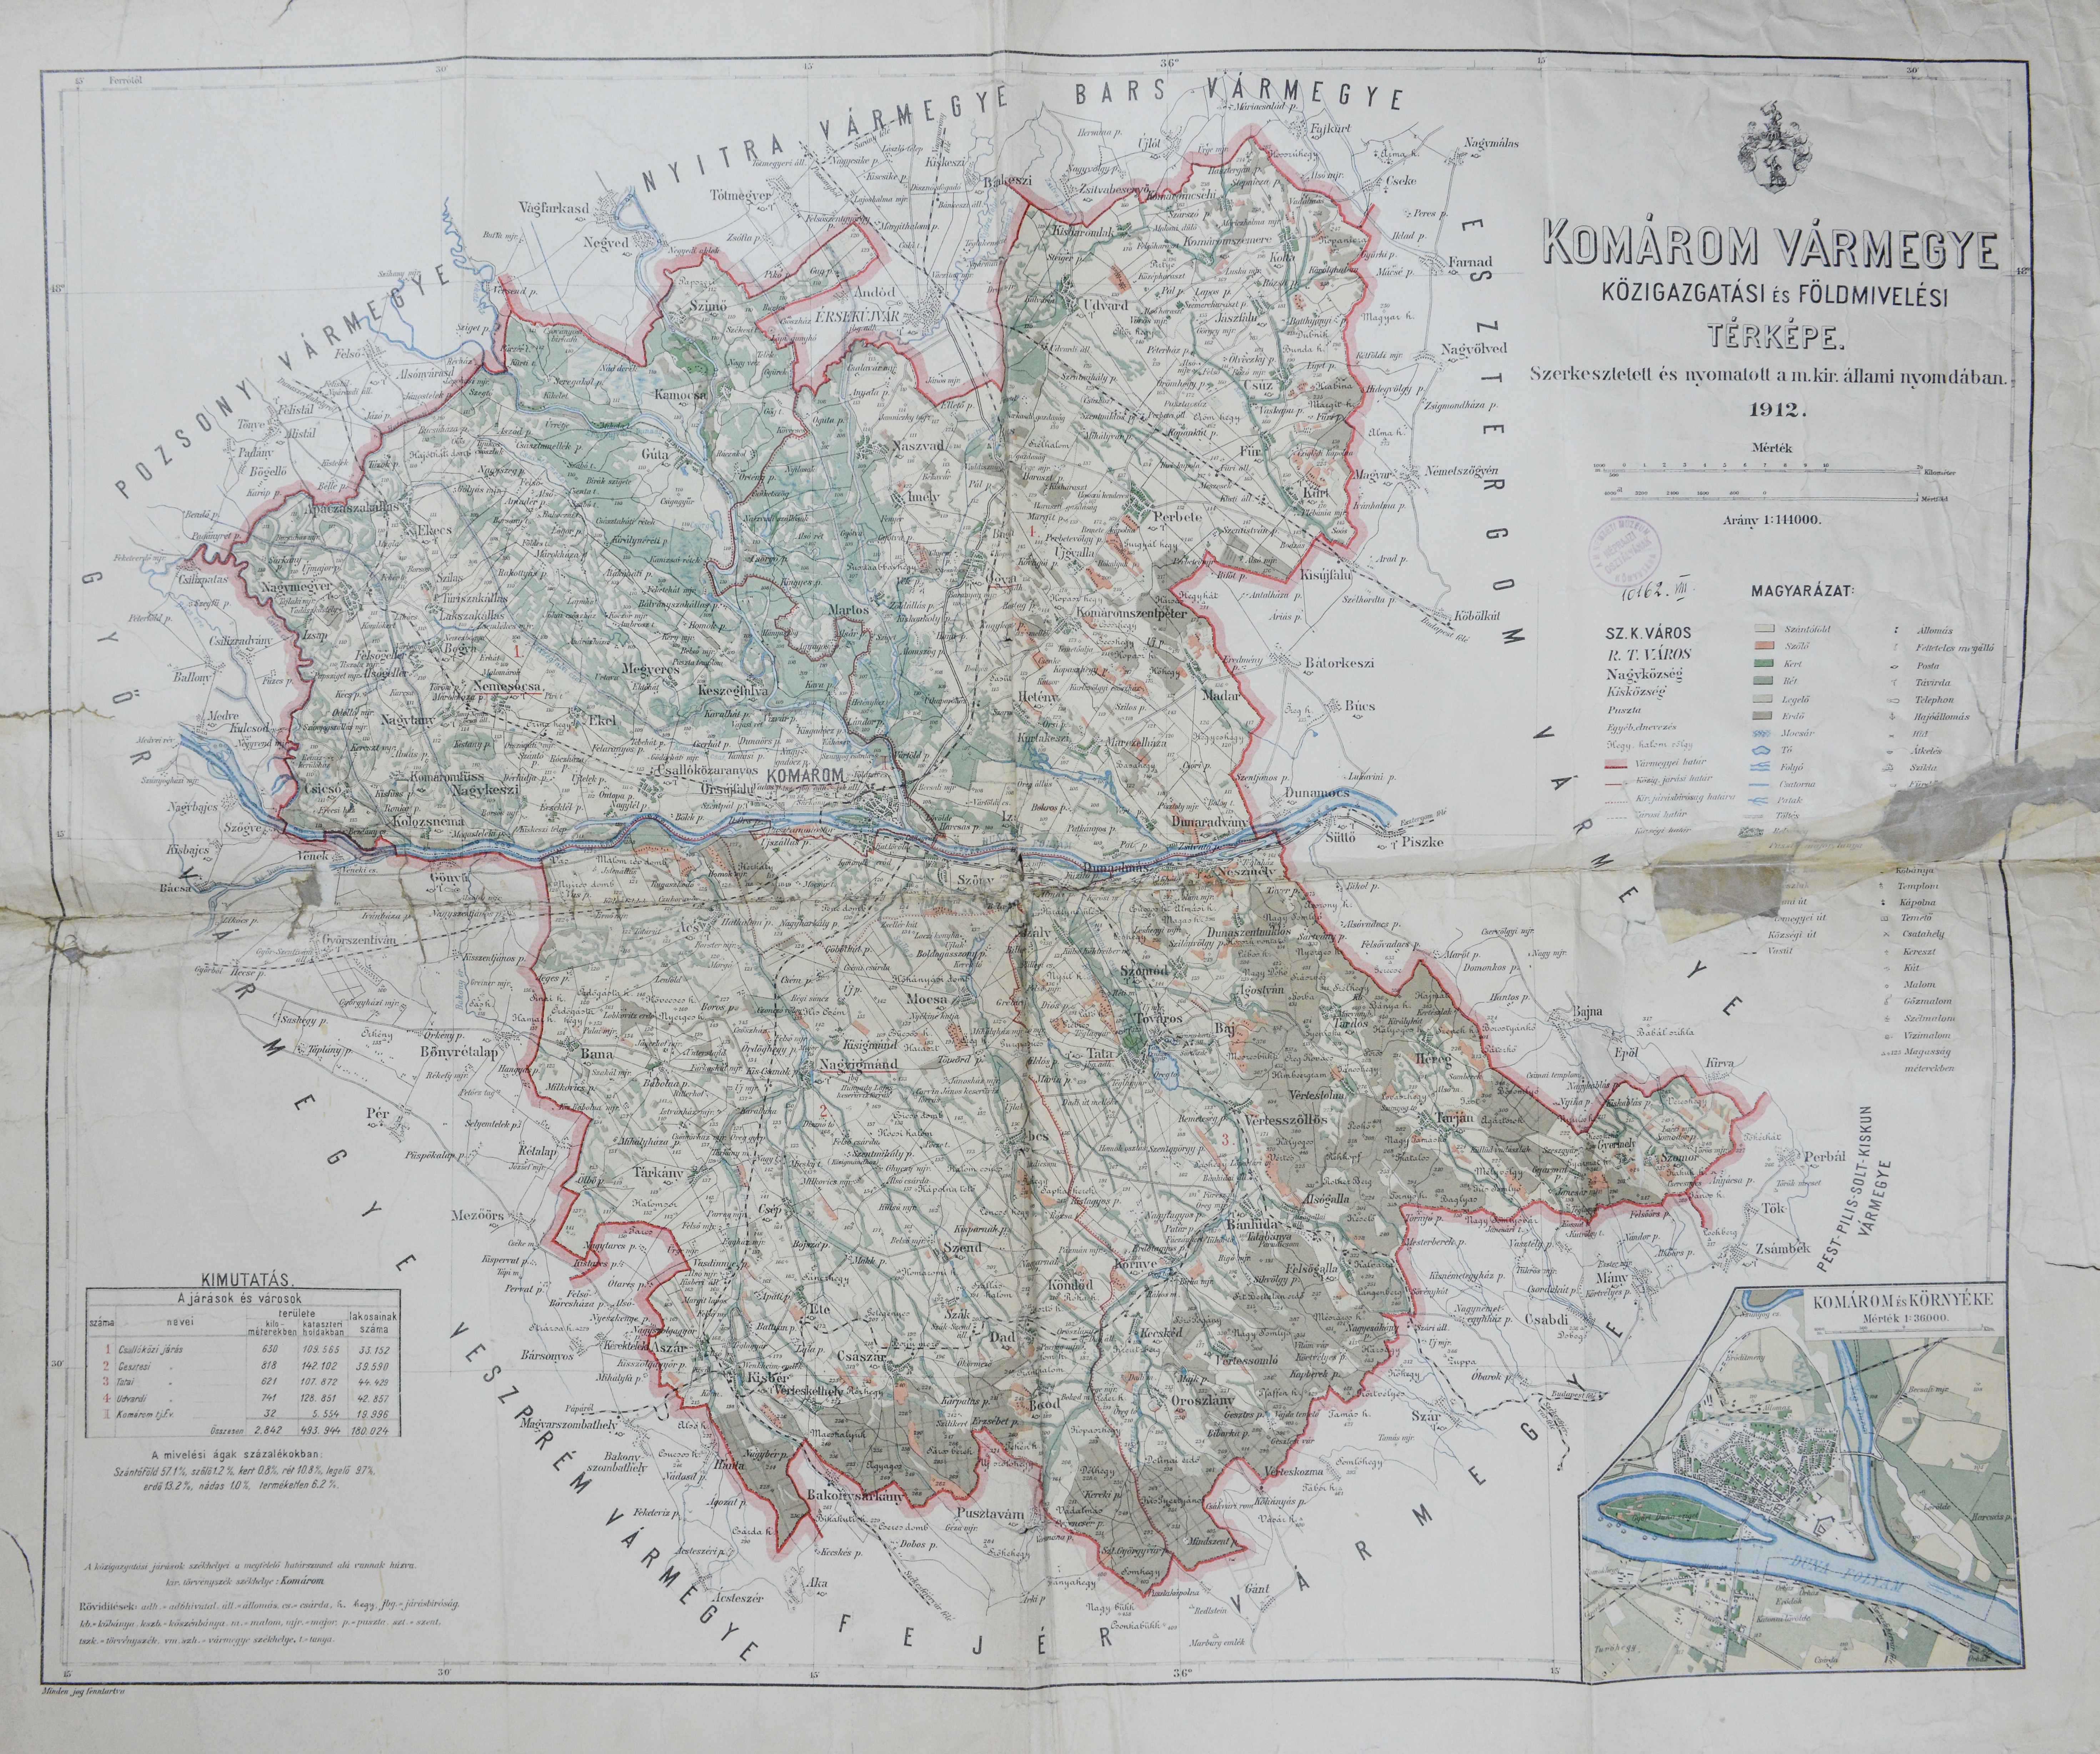 Komárom vármegye közigazgatási és földmívelési térképe